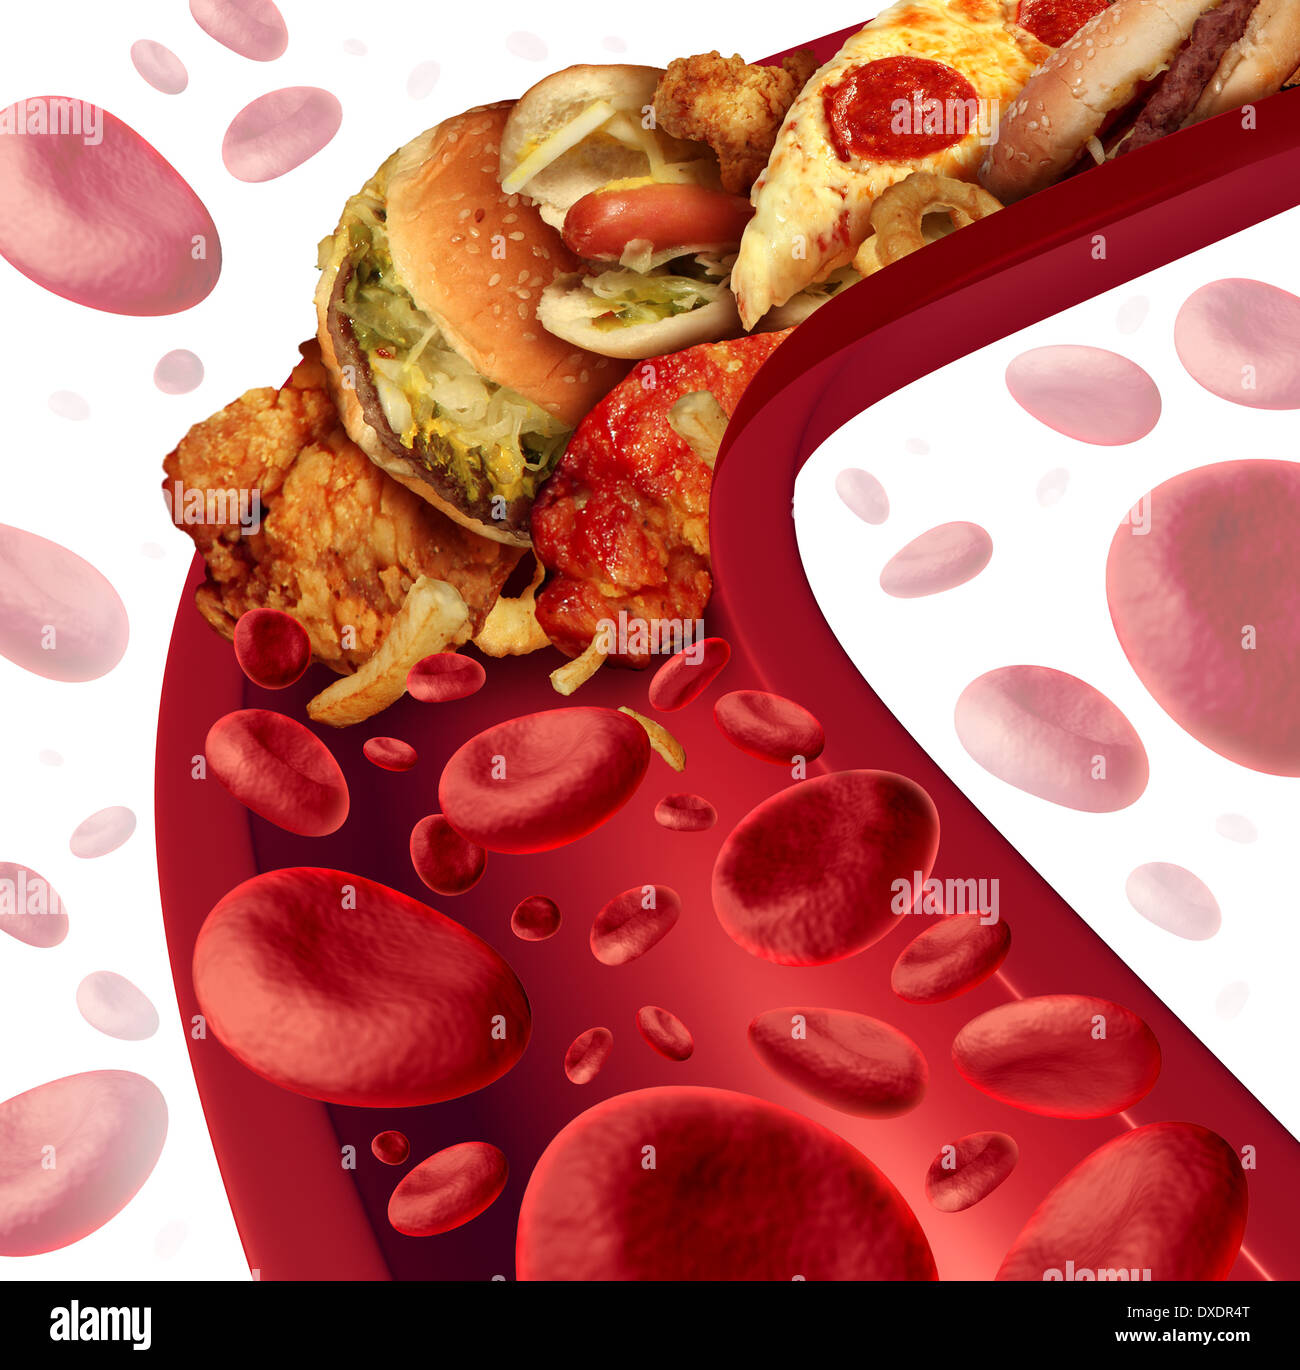 Cholesterin verstopften Arterie medizinisches Konzept mit einem menschlichen Blutgefäß, das durch ungesunde Lebensmittel wie Hamburger und frittierten Lebensmitteln als Gesundheit Risiko Metapher für Diät und Ernährung Probleme wie Essen Fett verstopft ist. Stockfoto